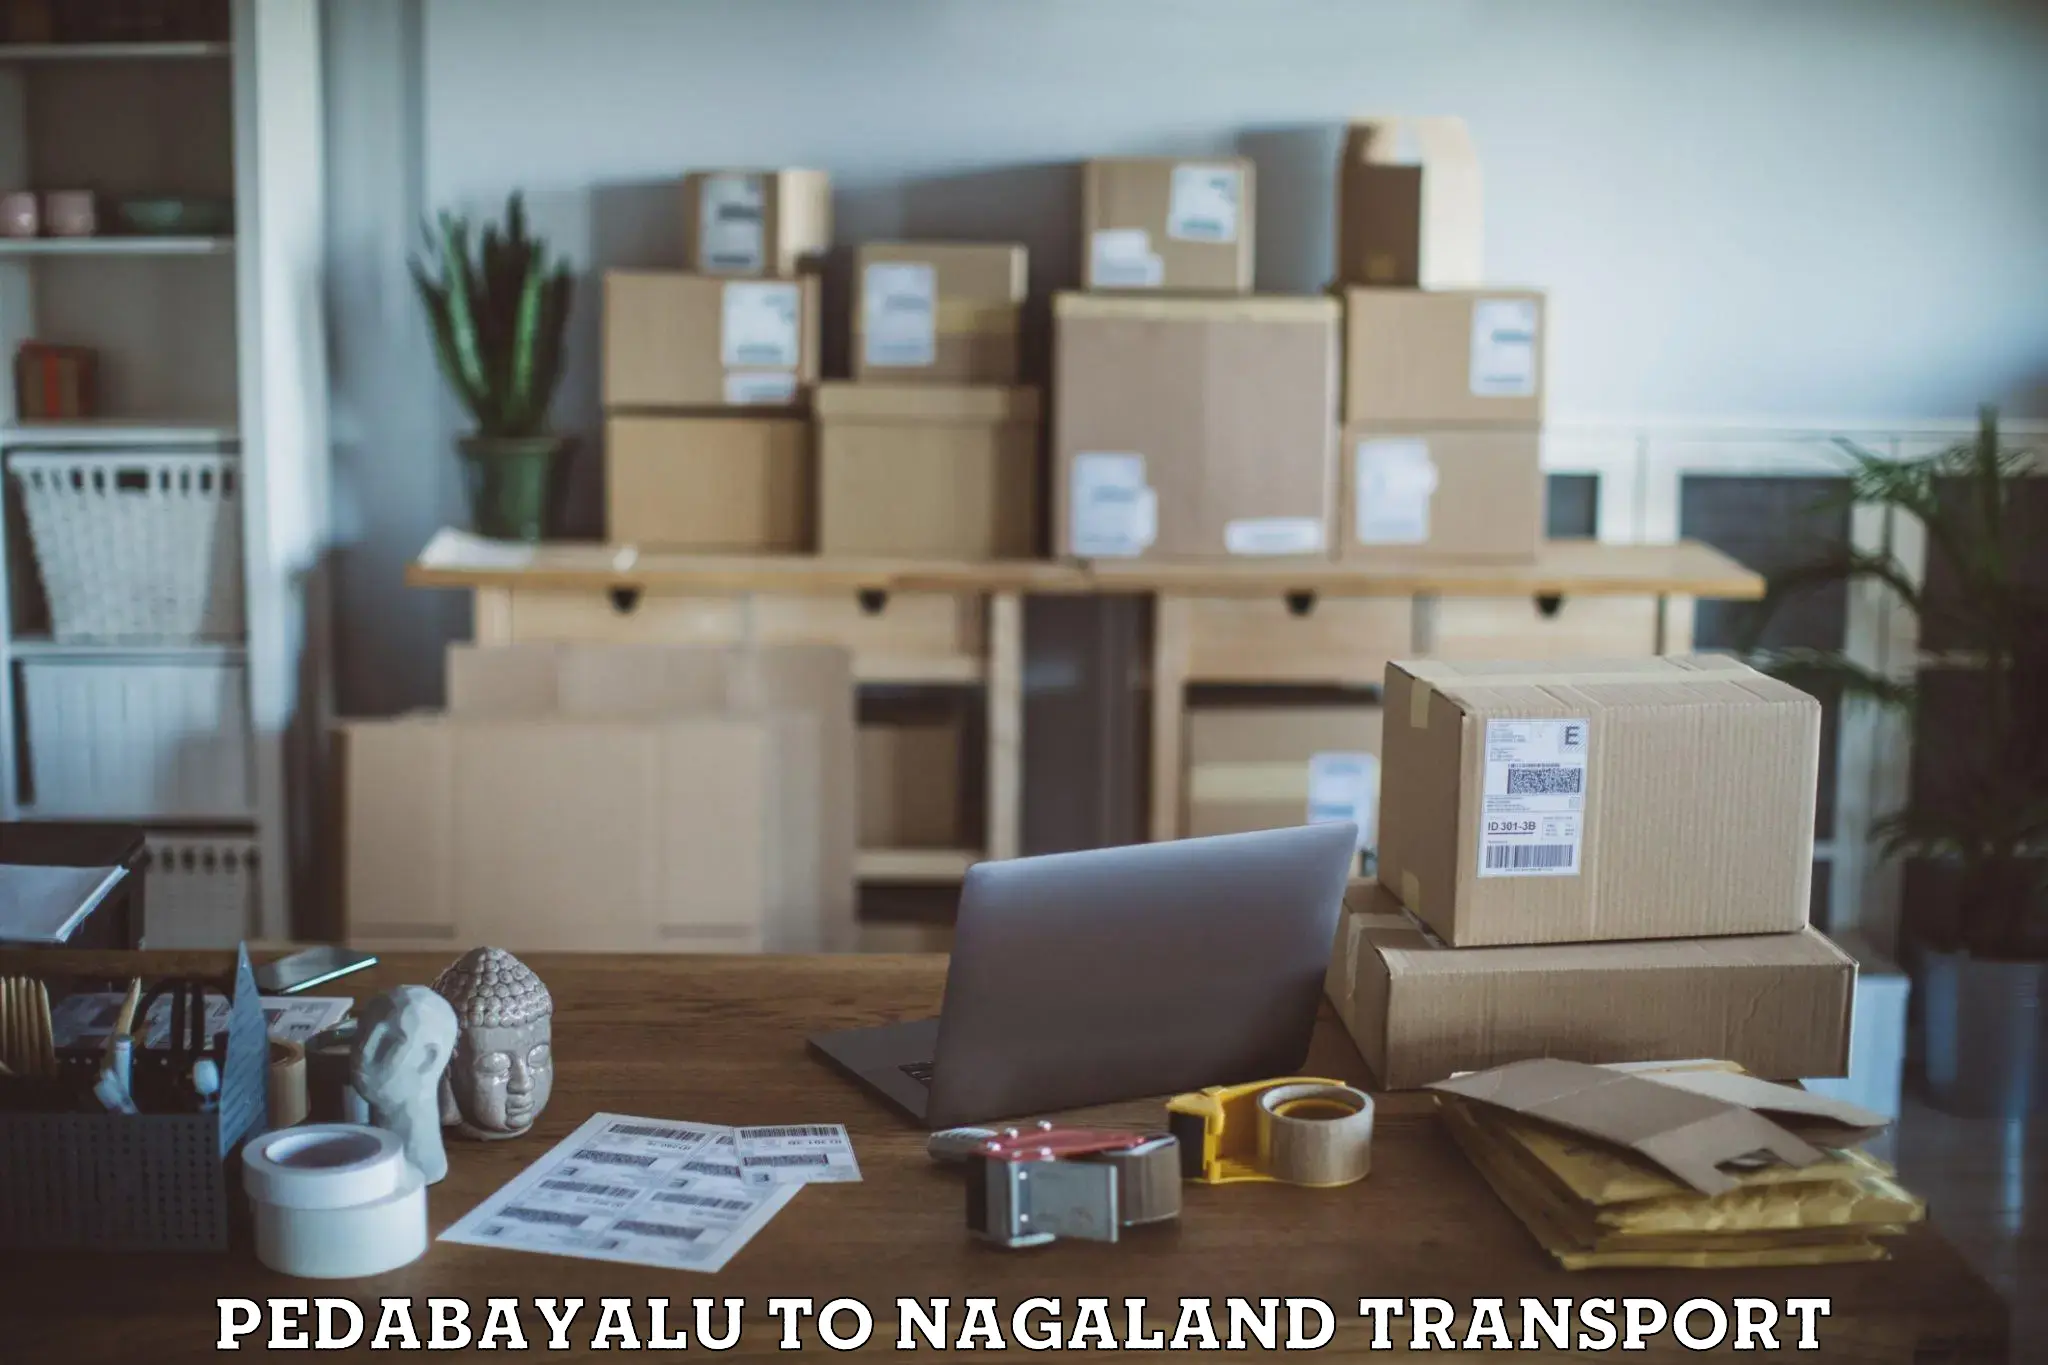 Nearby transport service Pedabayalu to Nagaland